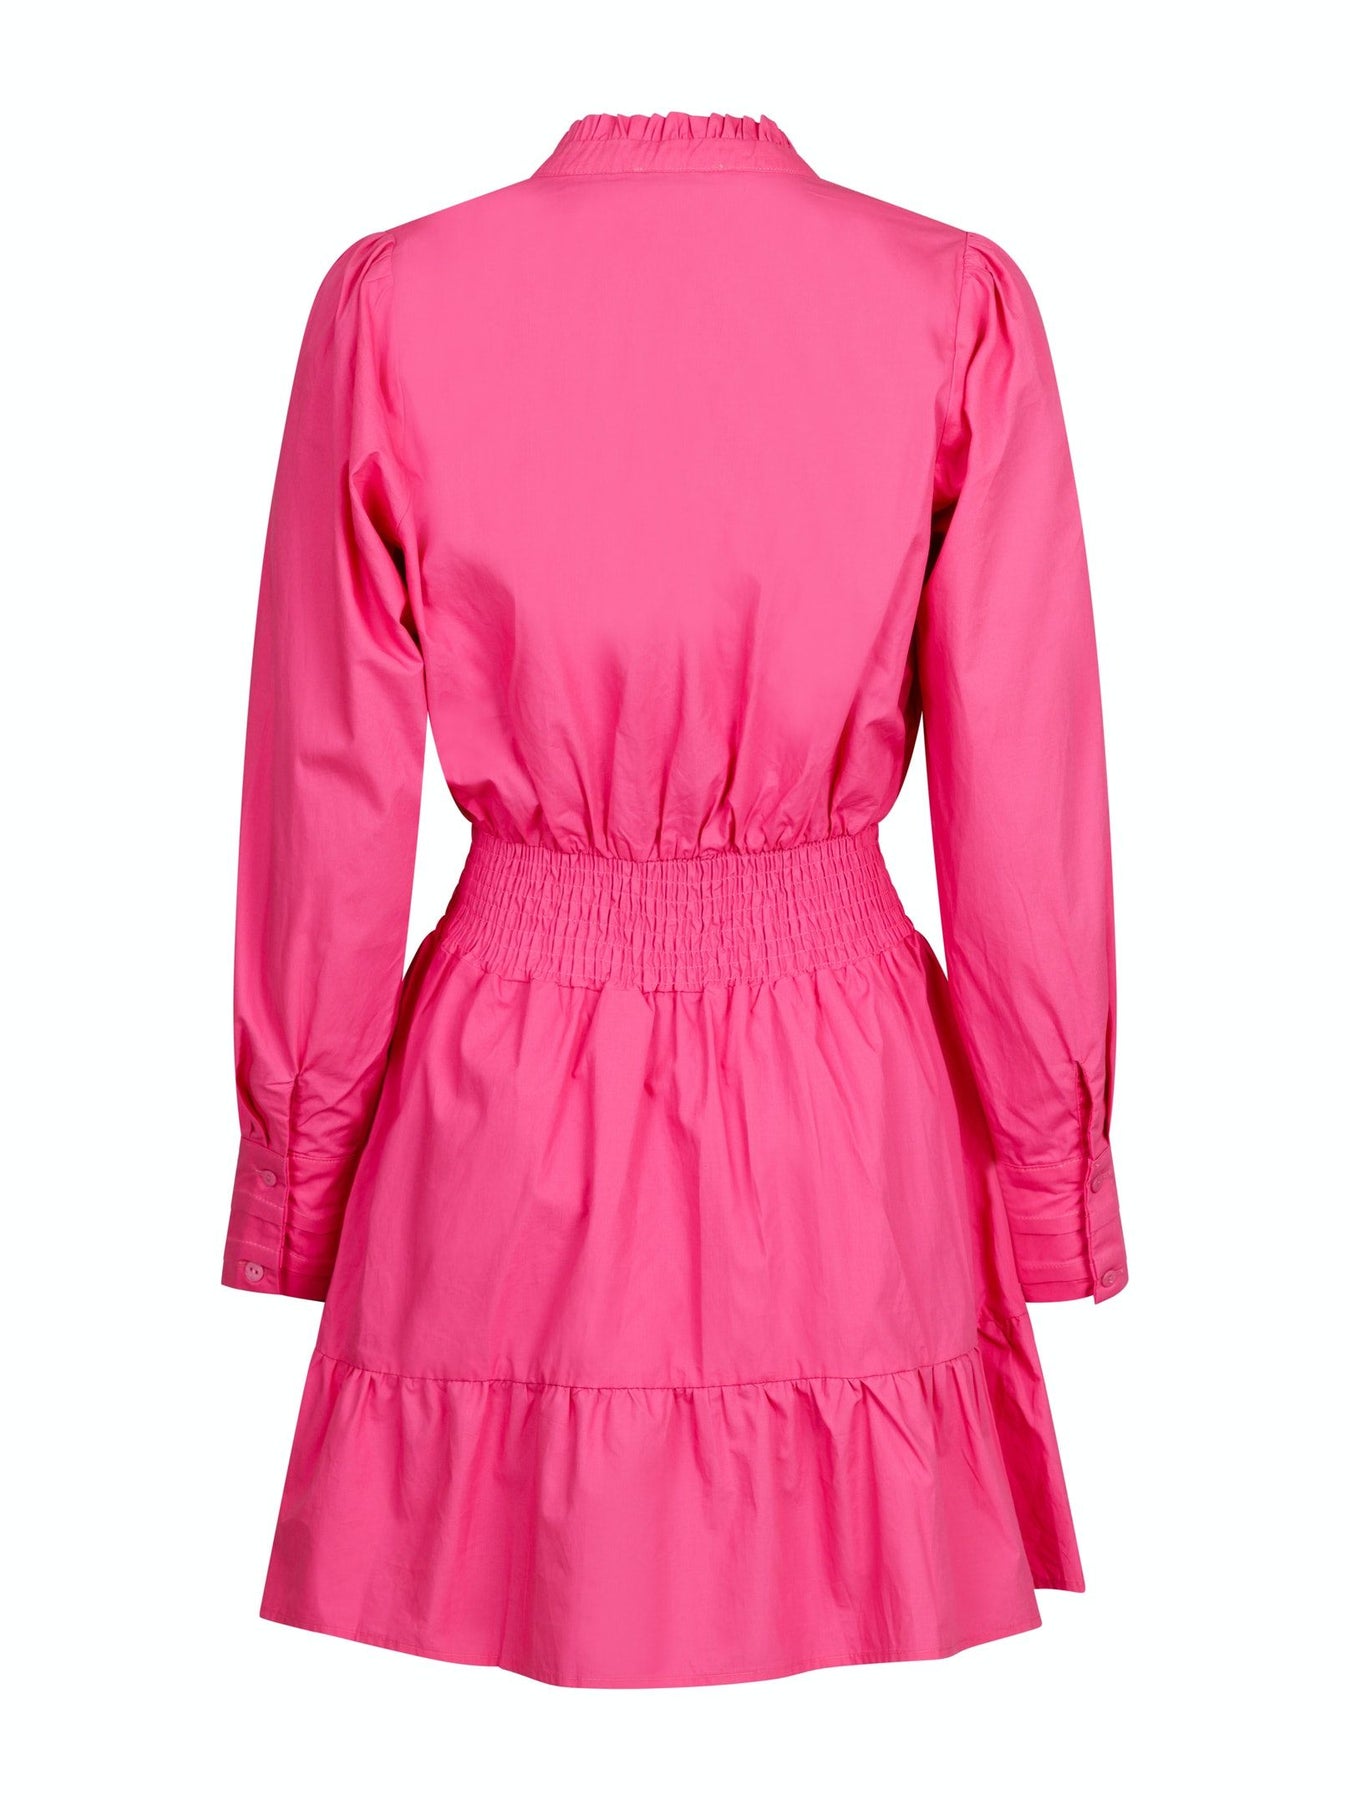 Yvette Poplin Dress - Pink